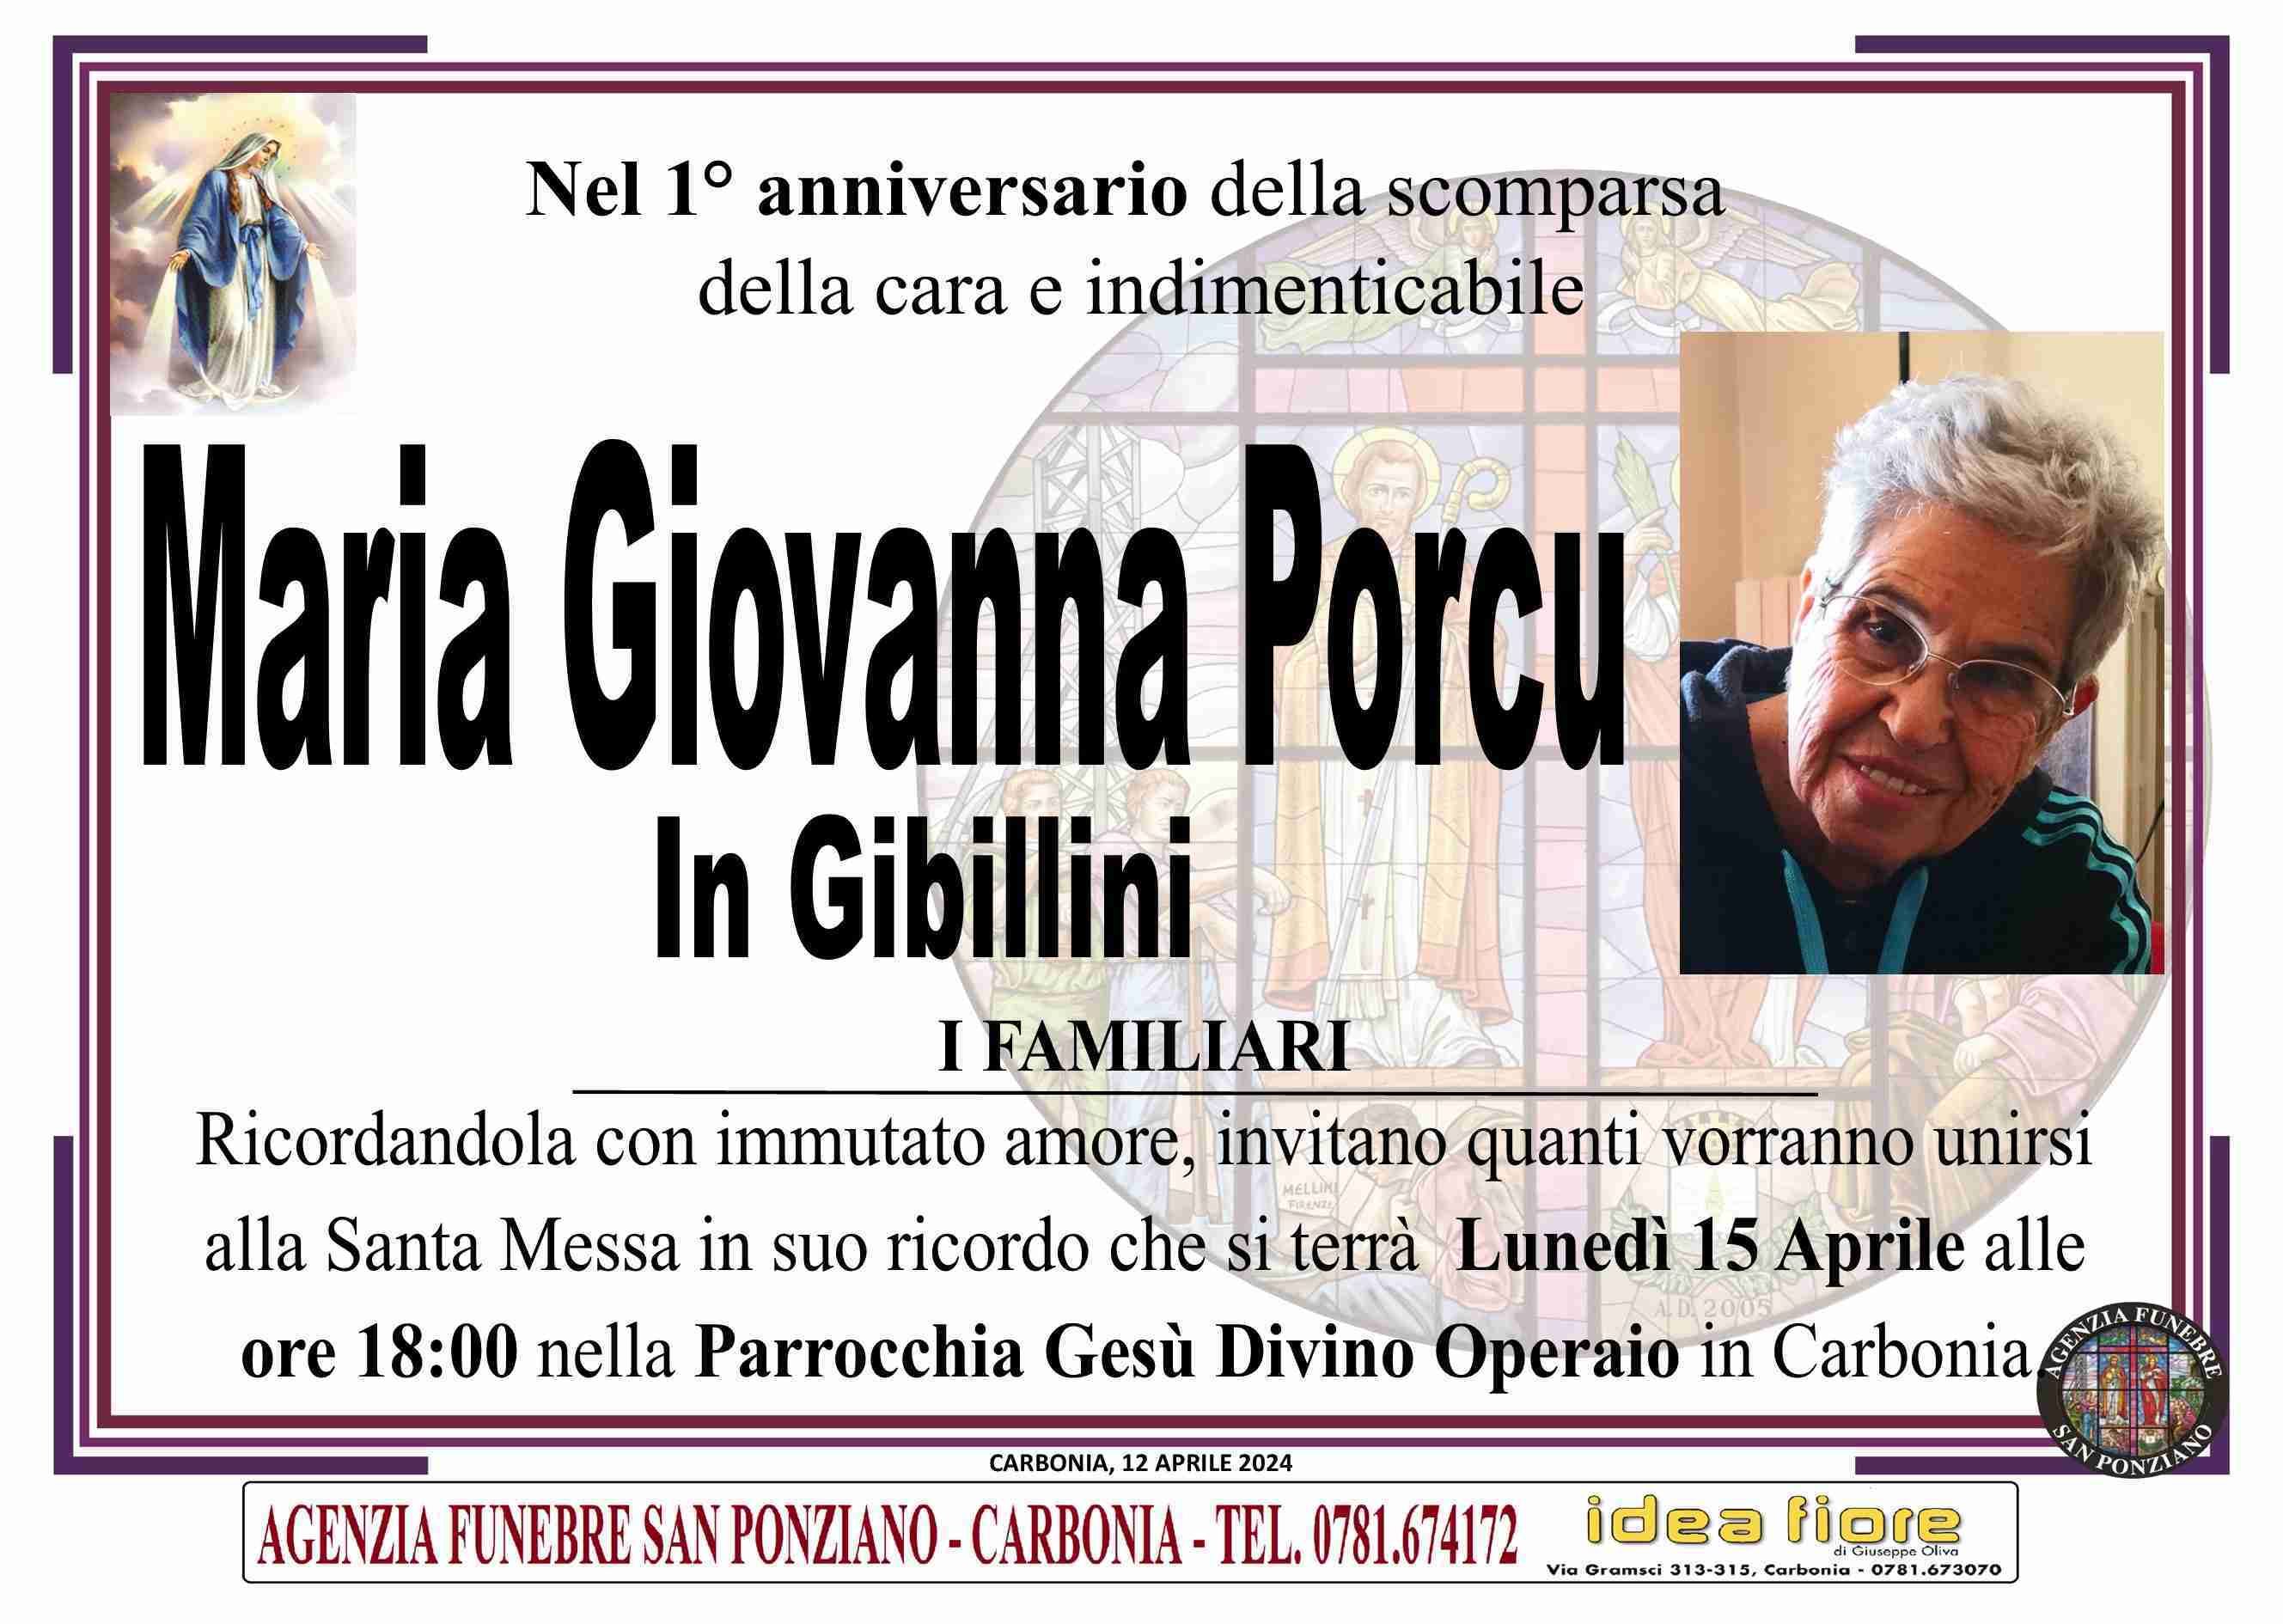 Maria Giovanna Porcu